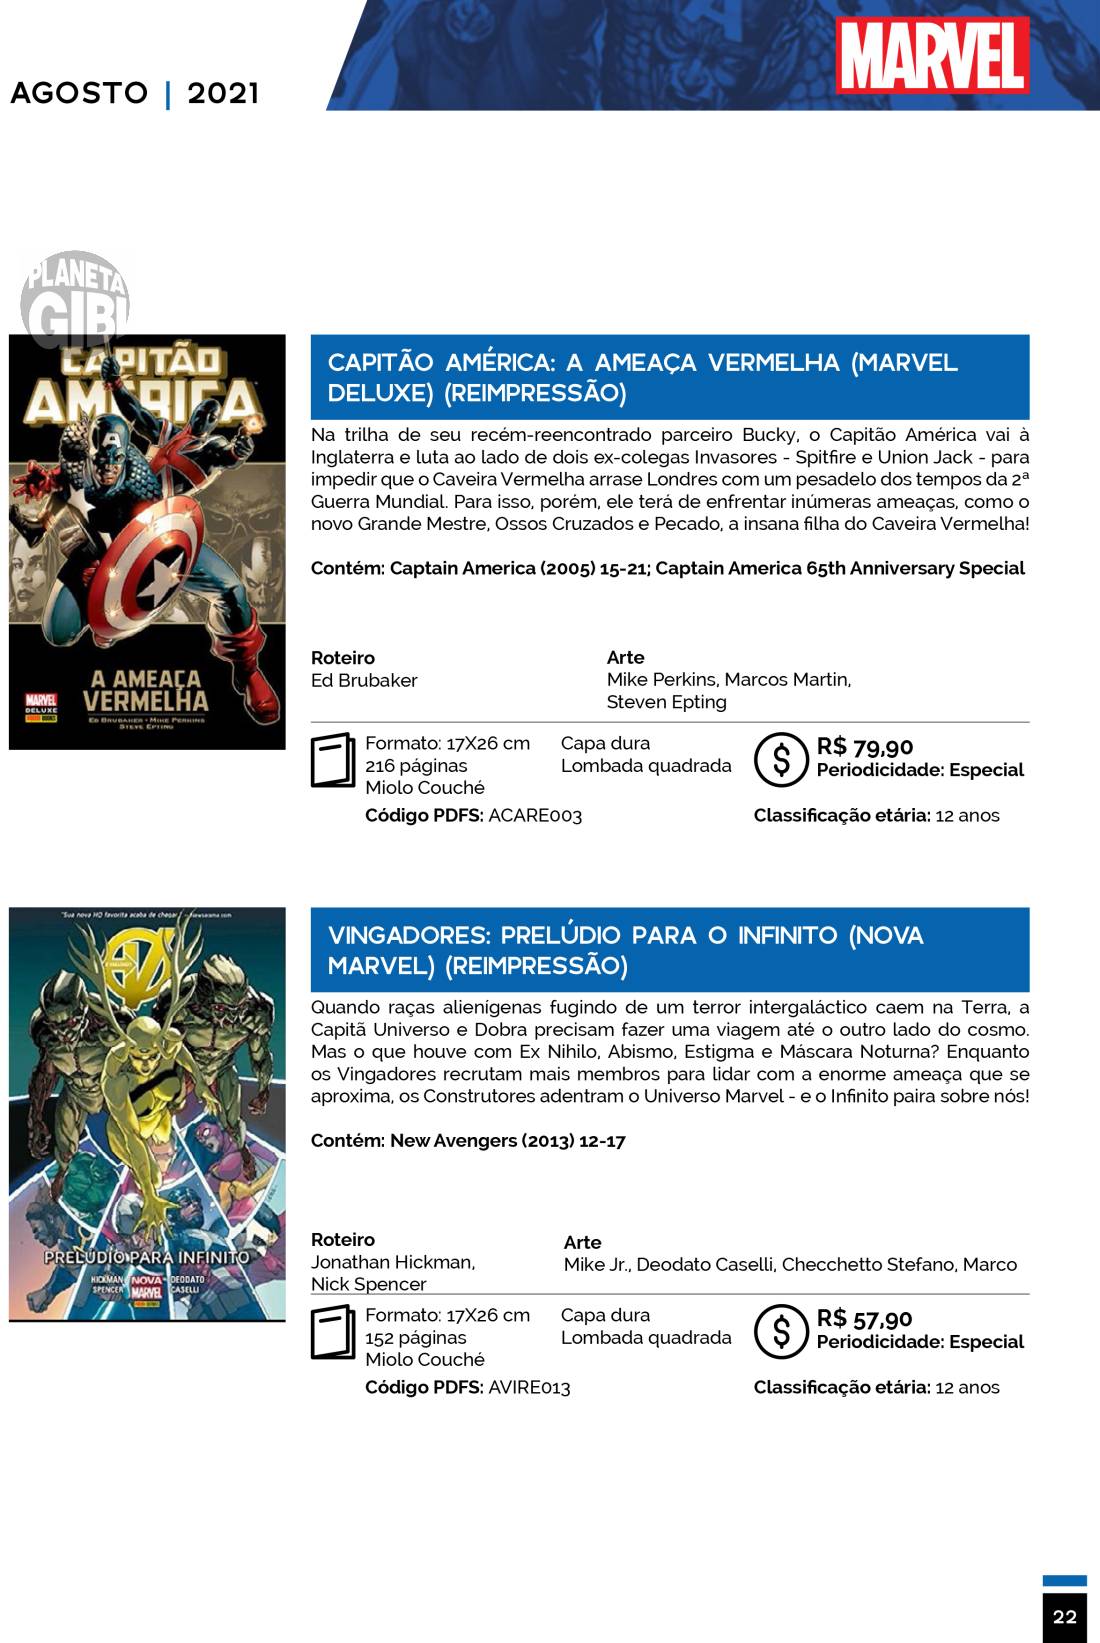 14 - Checklist Marvel/Panini (Julho/2020 - pág.09) - Página 9 Catalogo-Julho-Agosto-22